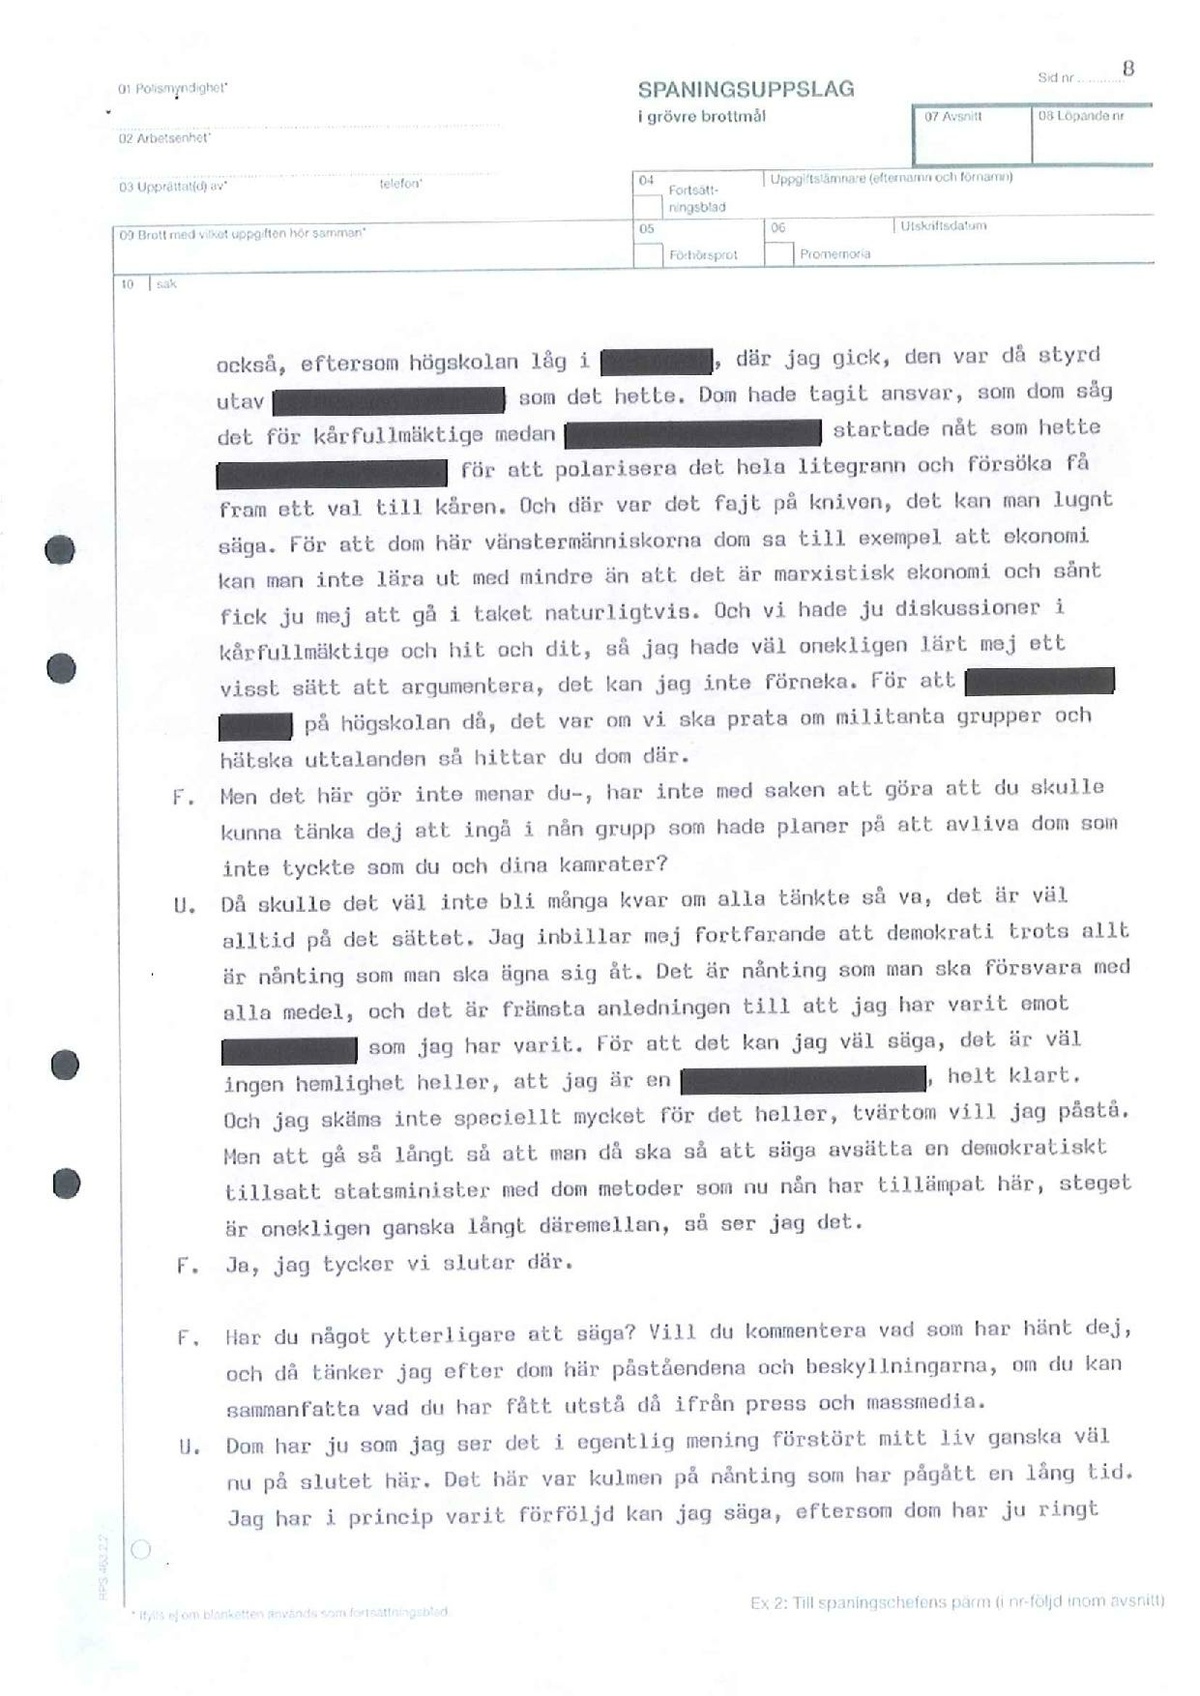 Pol-1993-09-16 D11614-01-C Utriainen-Brunflo-skytteklubb-AGAG-Magnumklubben.pdf